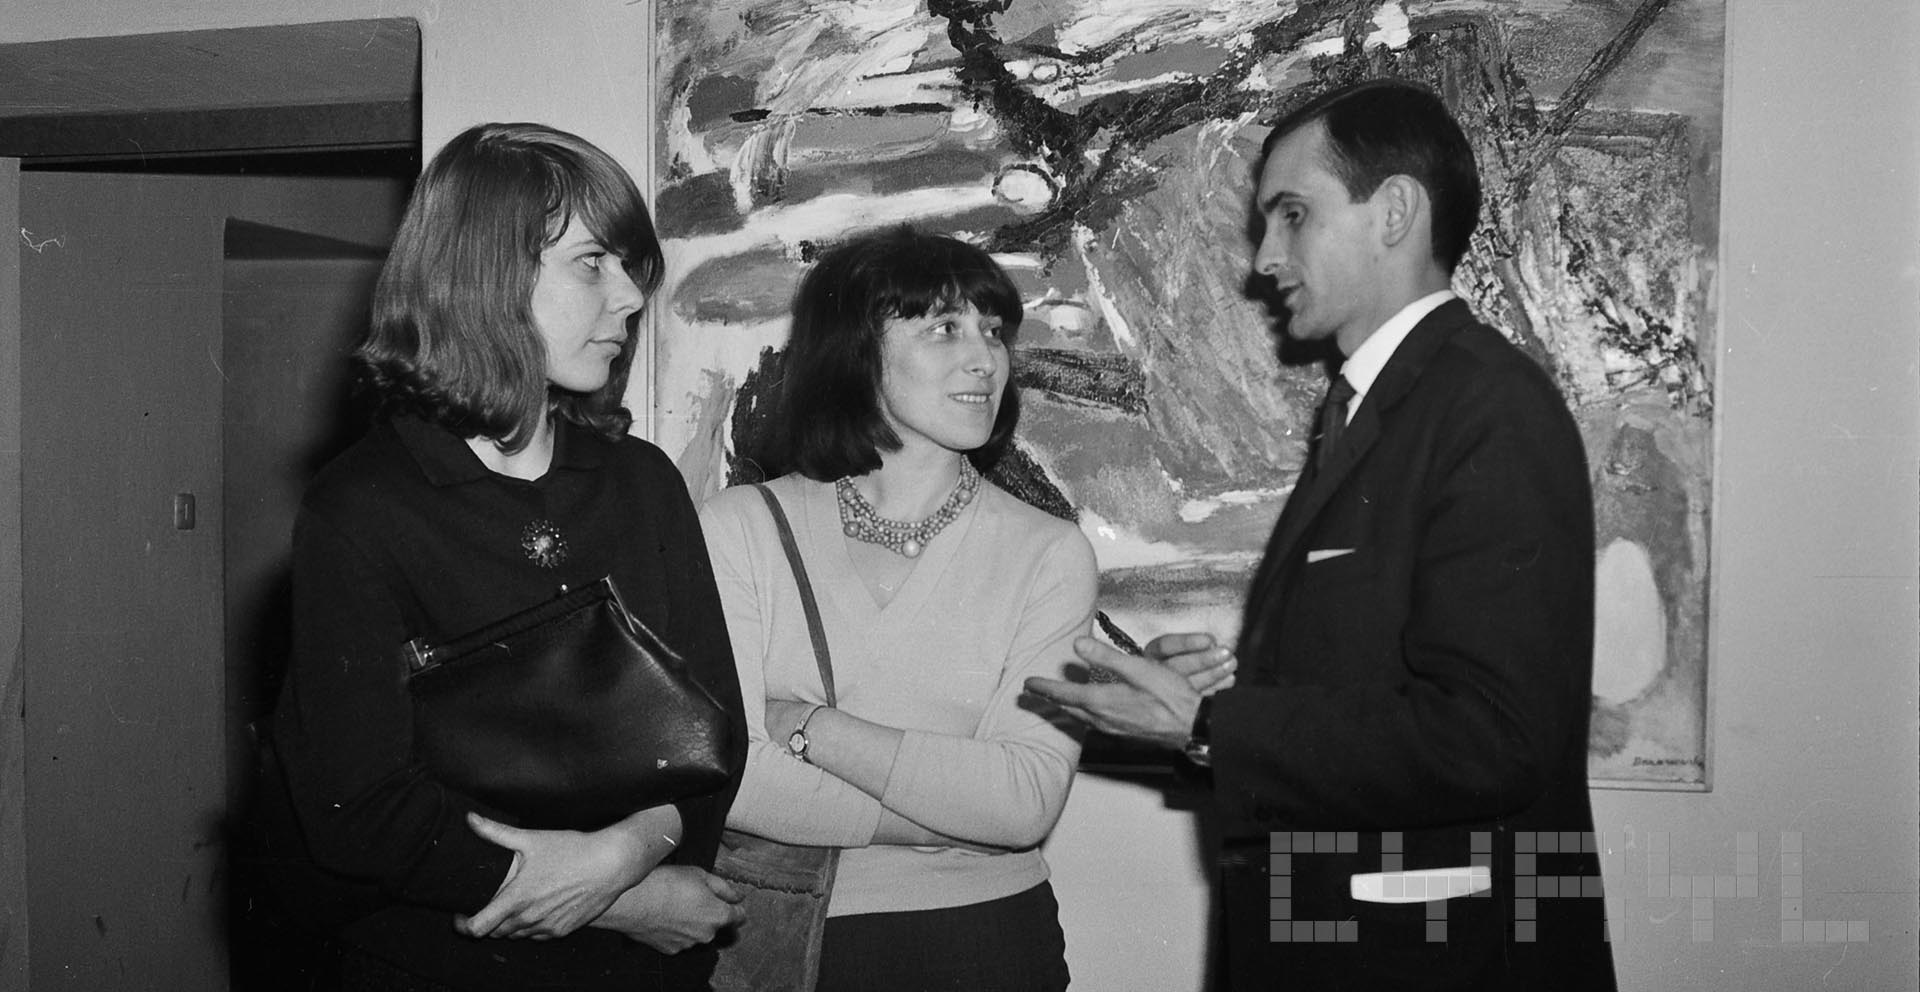 Wystawa polskich artystów działających w Londynie | 1965 | Fotografie Jerzego Nowakowskiego